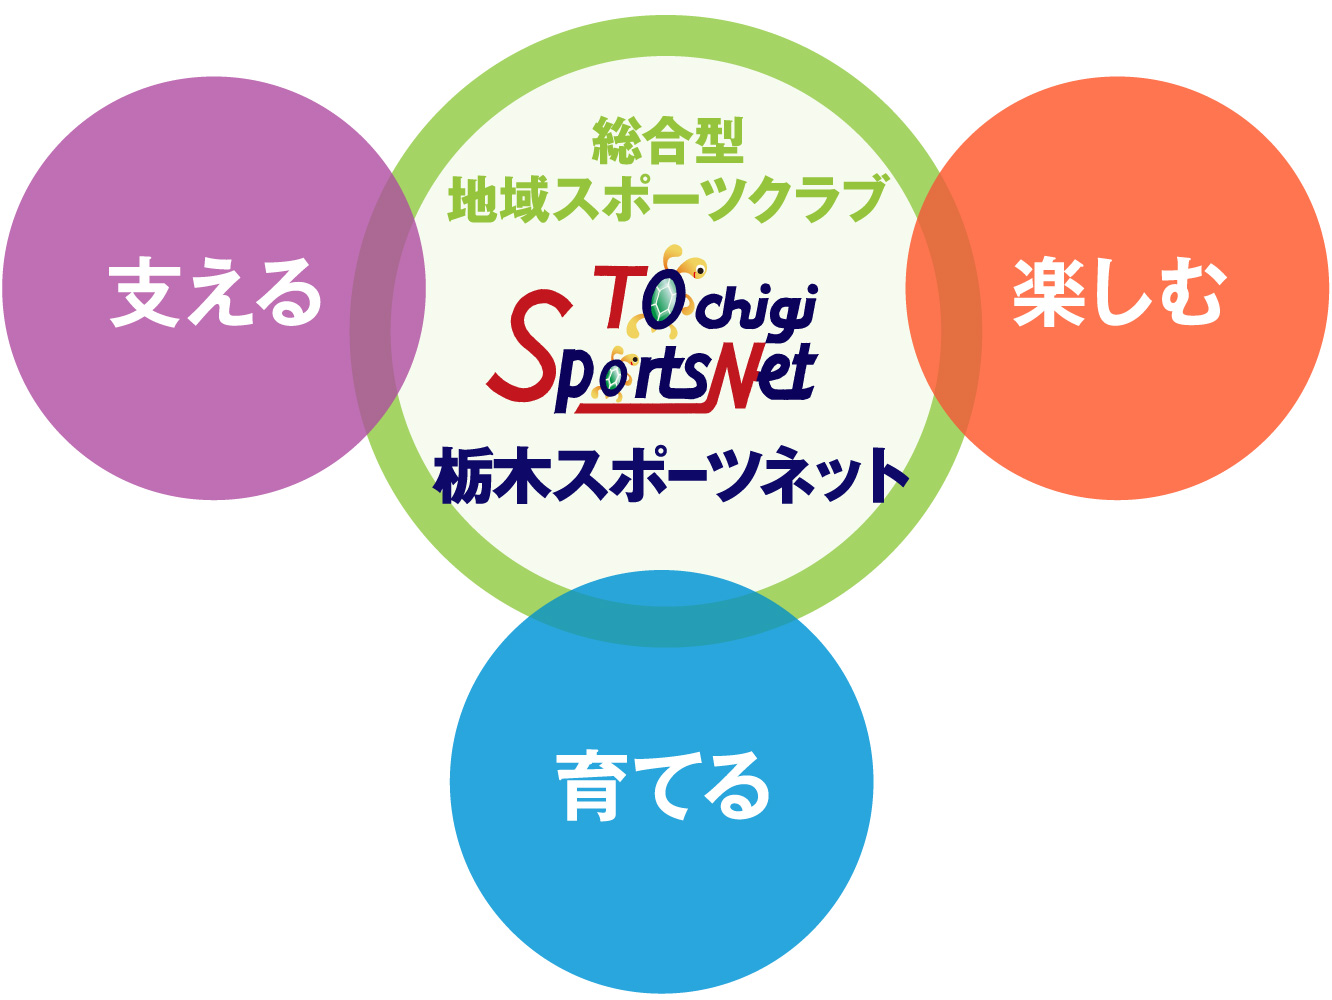 栃木スポーツネットのビジョン